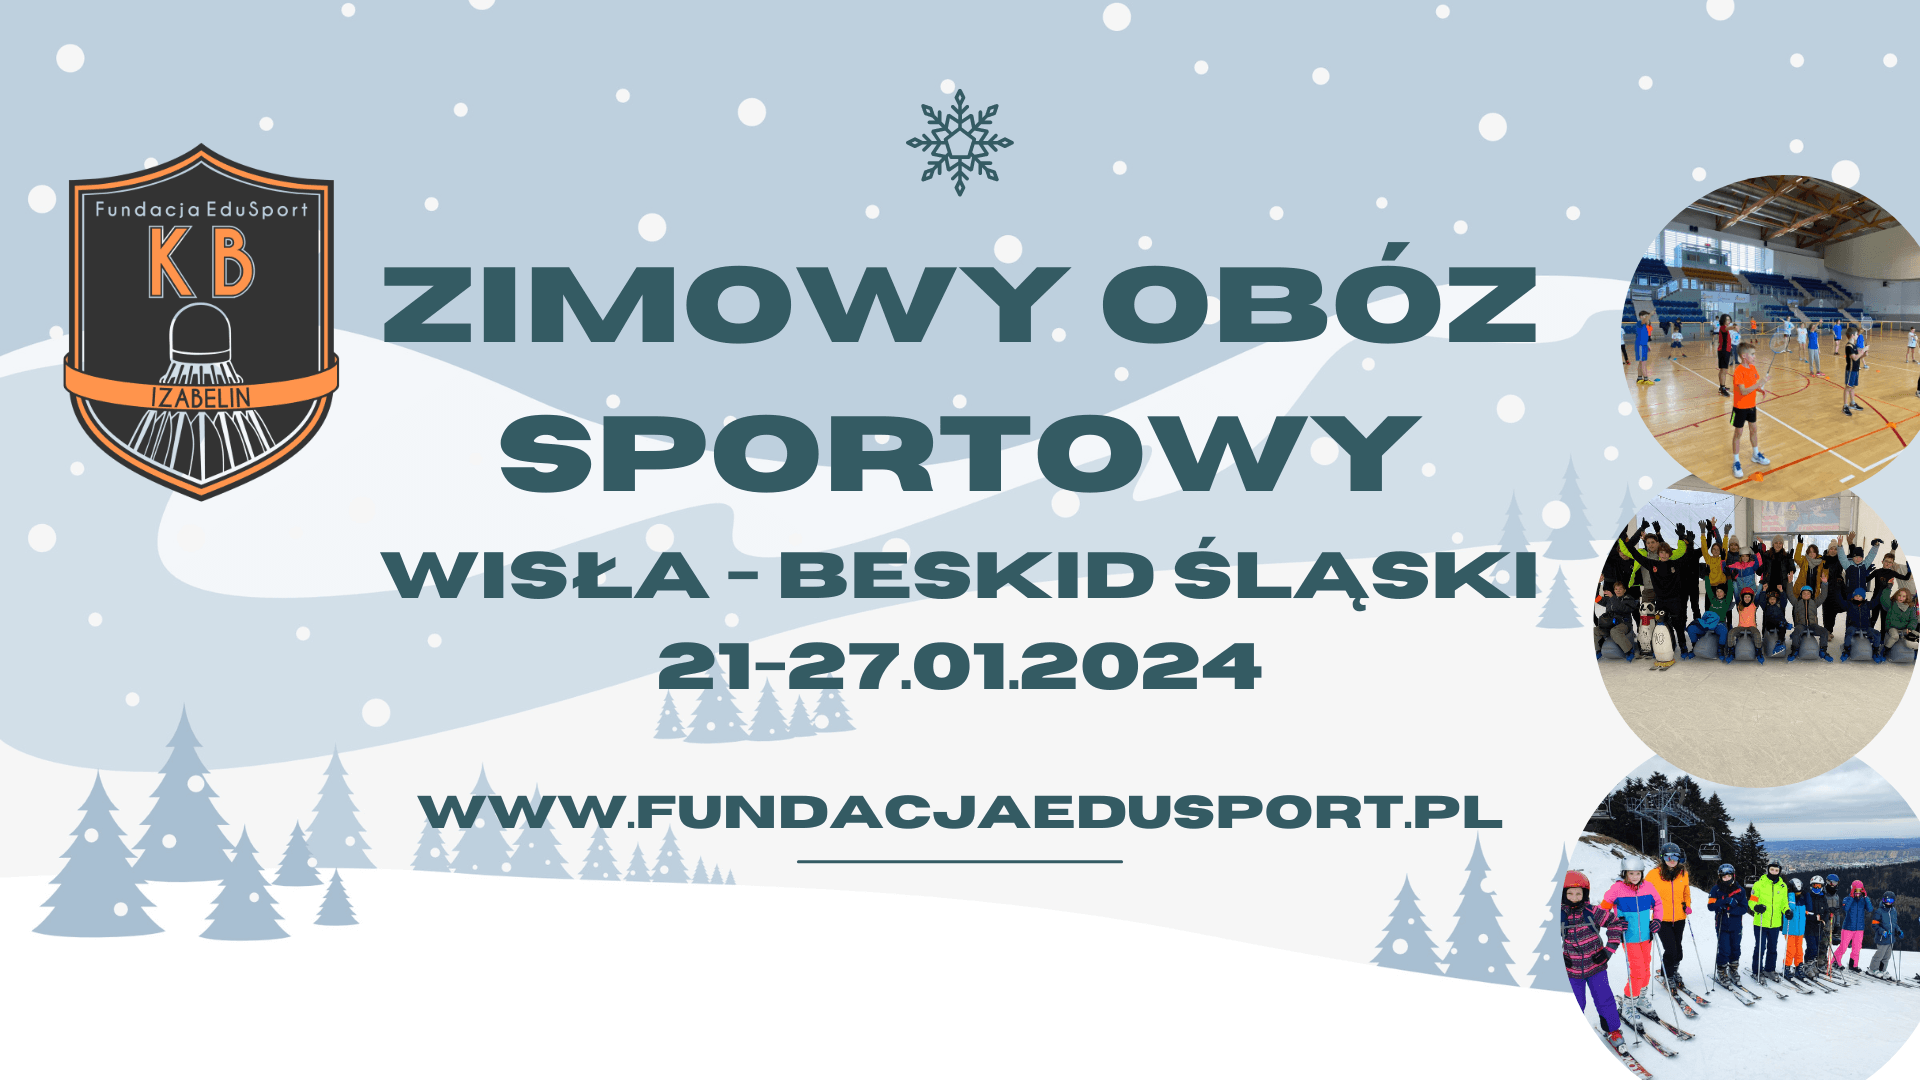 Zimowy obóz sportowy Wisła- Beskid Śląski